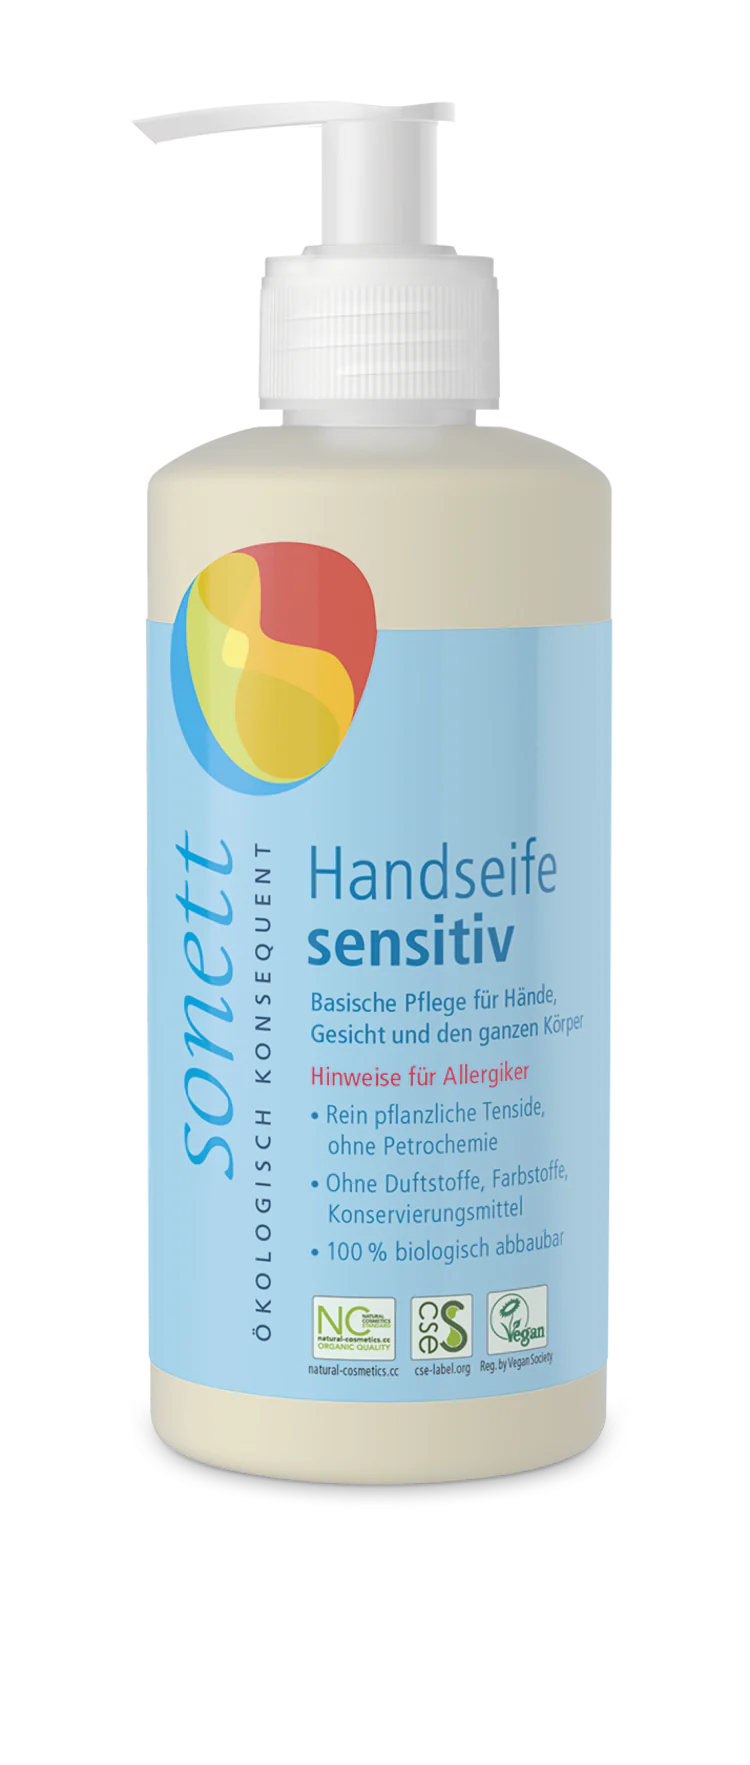 Handseife sensitiv